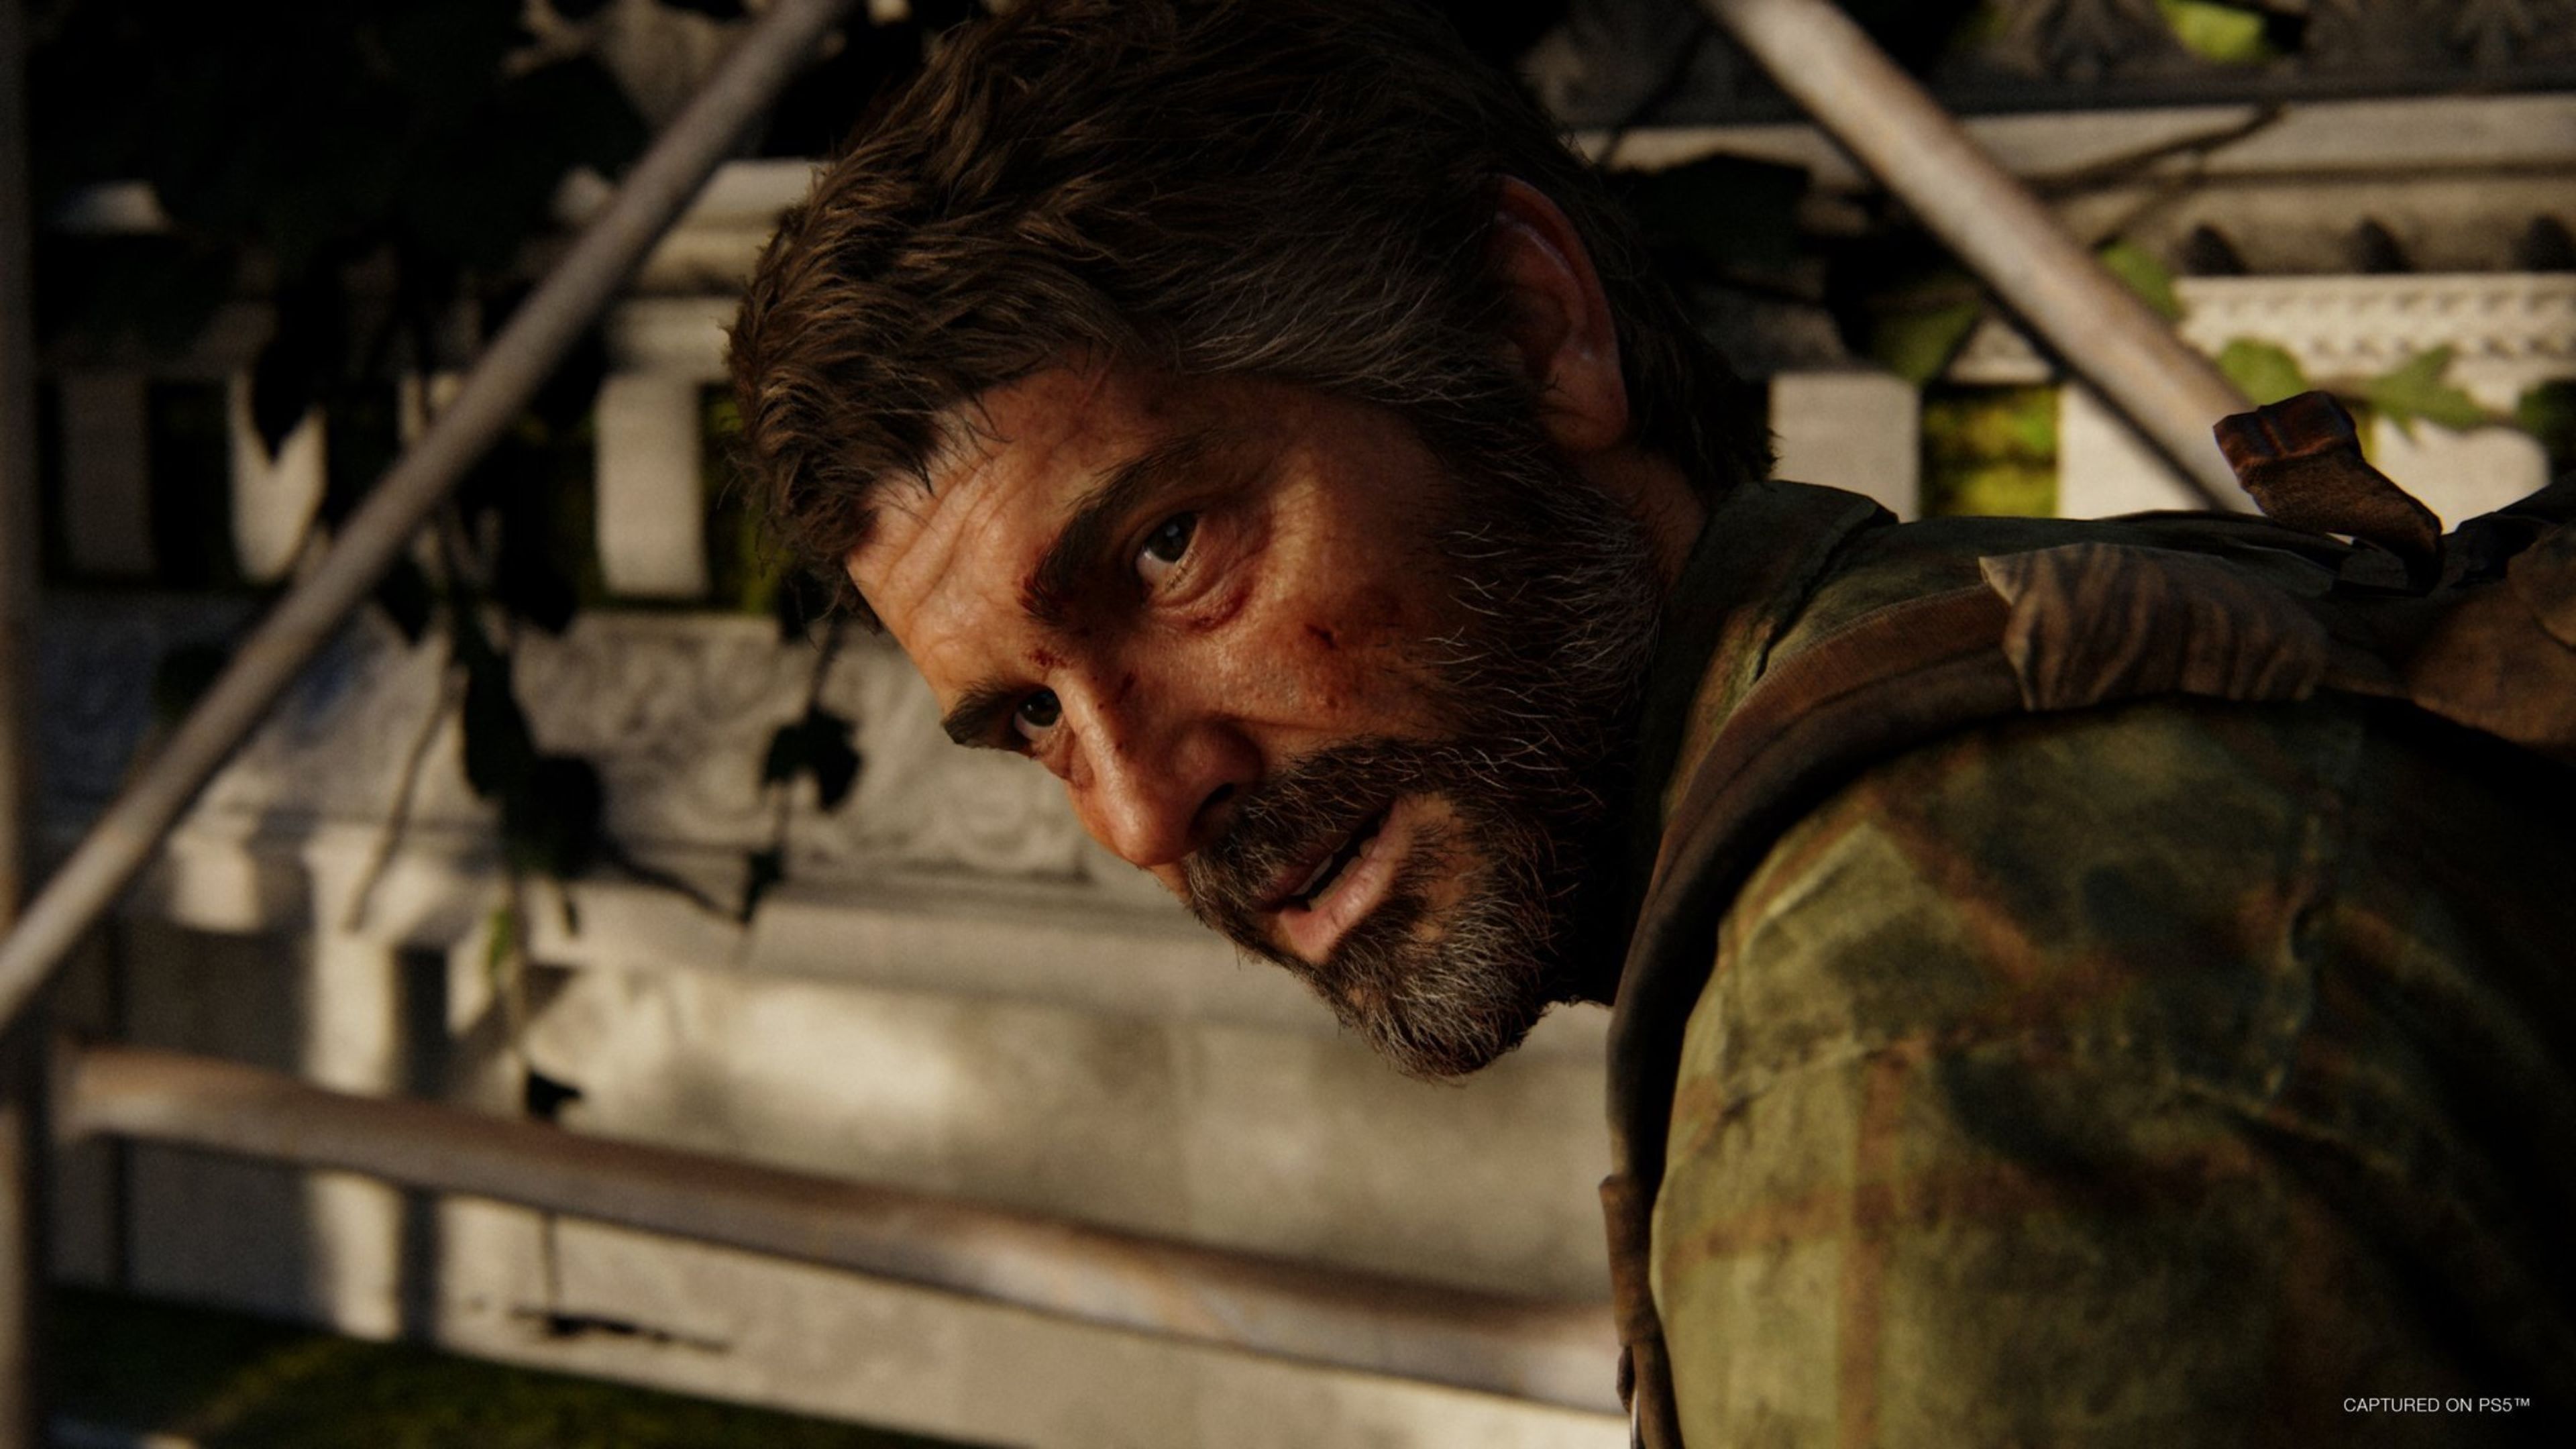 The Last of Us: Troy Baker, el actor original de Joel en el videojuego,  aparecerá en el siguiente capitulo de la serie de HBO